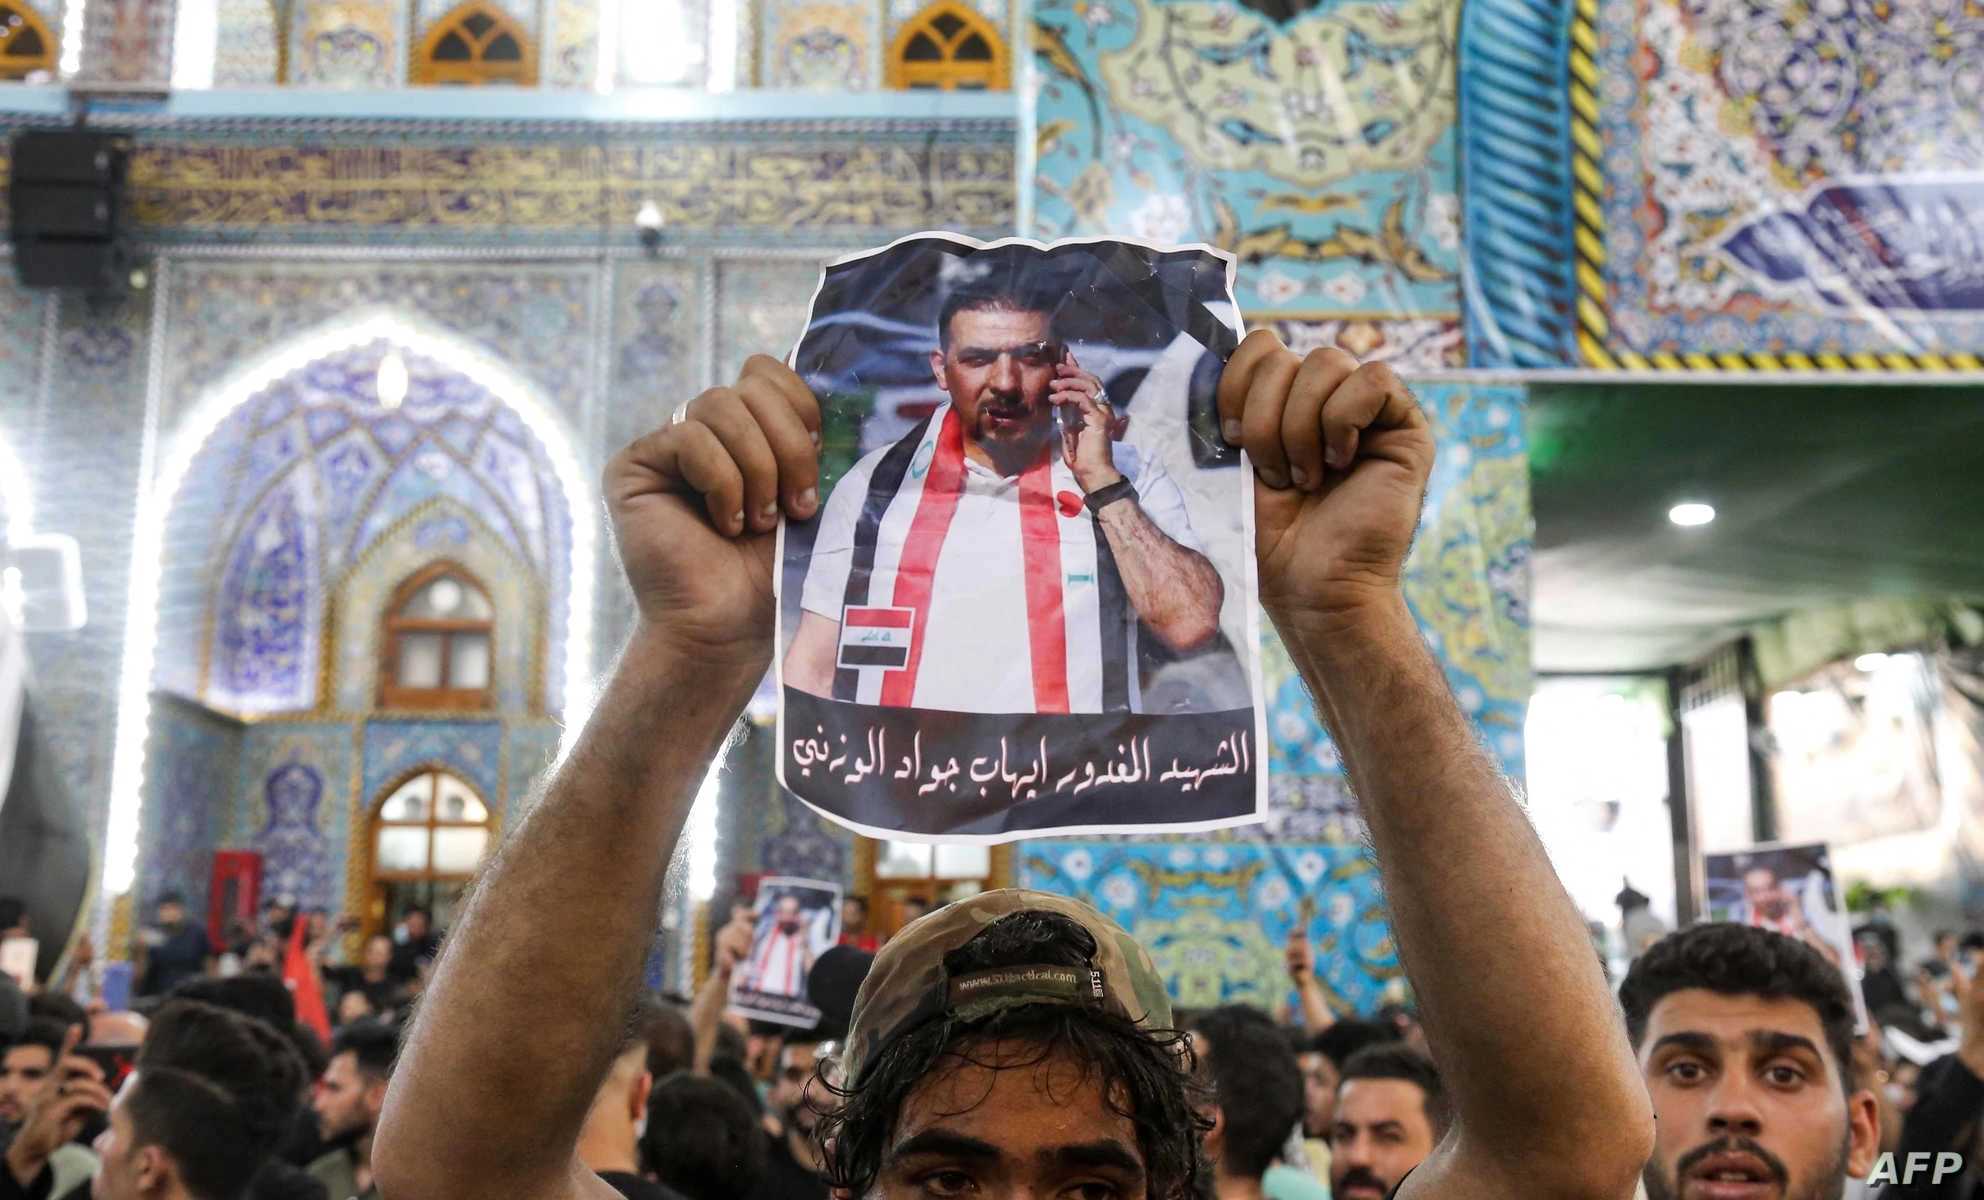 قتل إيهاب الوزني، منسق الاحتجاجات المناهضة للسلطة في مدينة كربلاء